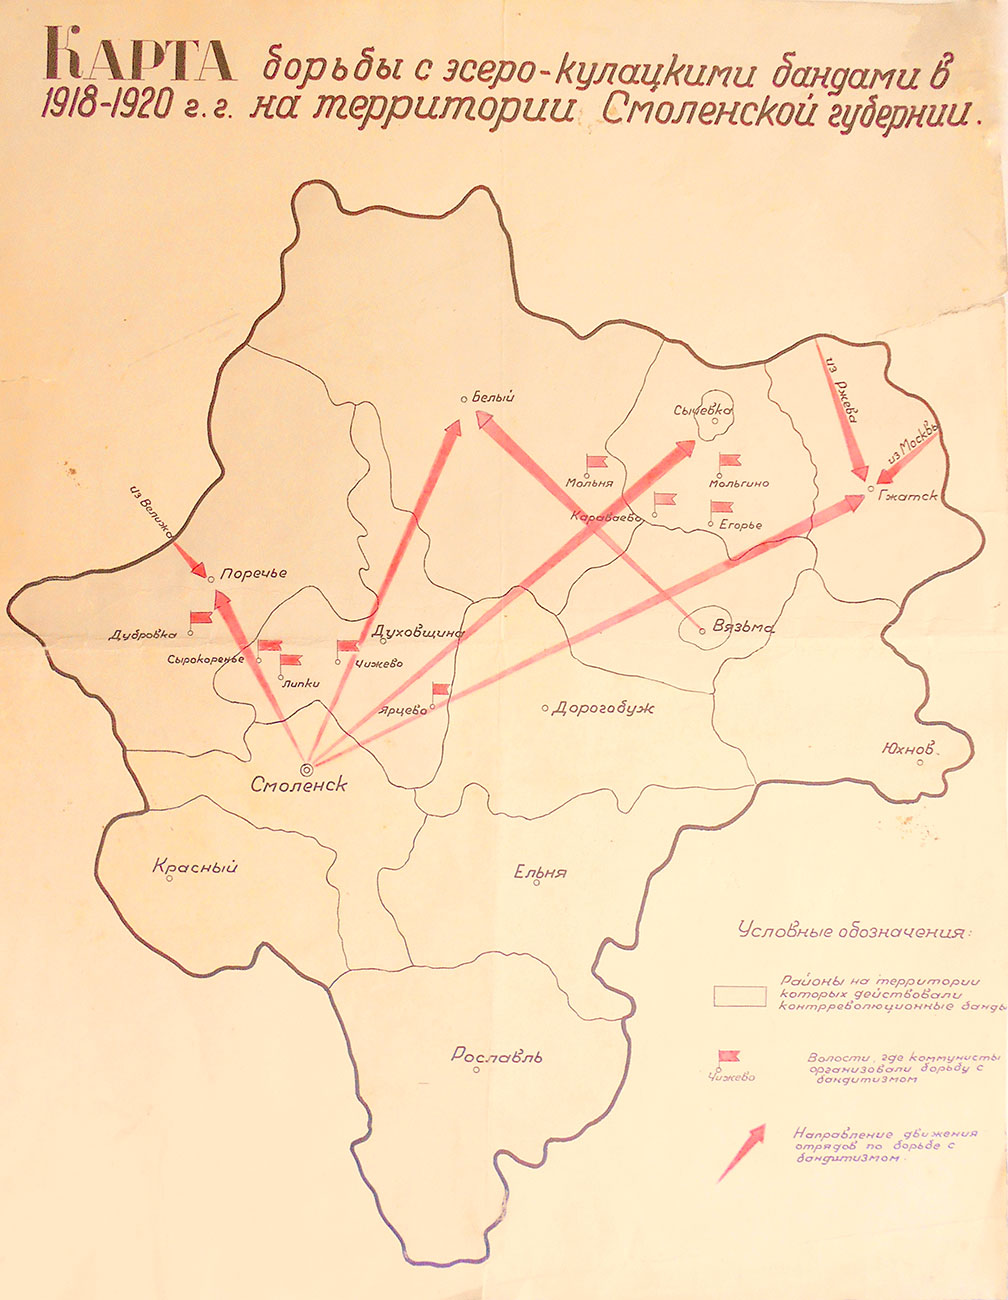 Карта борьбы с эссеро-кулацким мятежом в г. Гжатске в 1918 г.